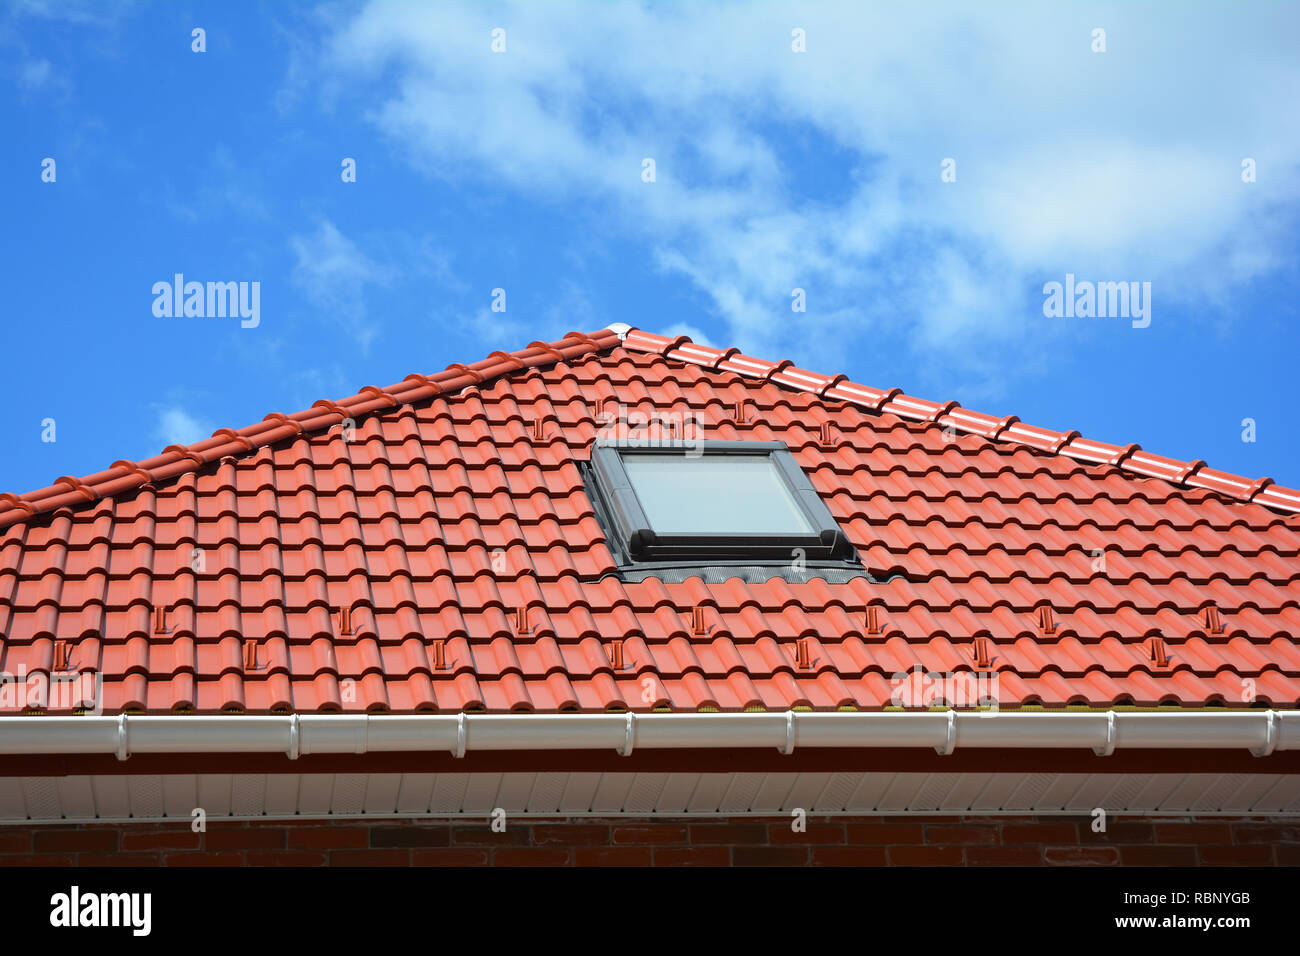 Oberlicht auf rot Keramik fliesen Haus Dach mit Regenrinne. Oberlichter, Dach Windows und Sun Tunneln. Dachgeschoss Dachfenster Lösung outdoor. Stockfoto